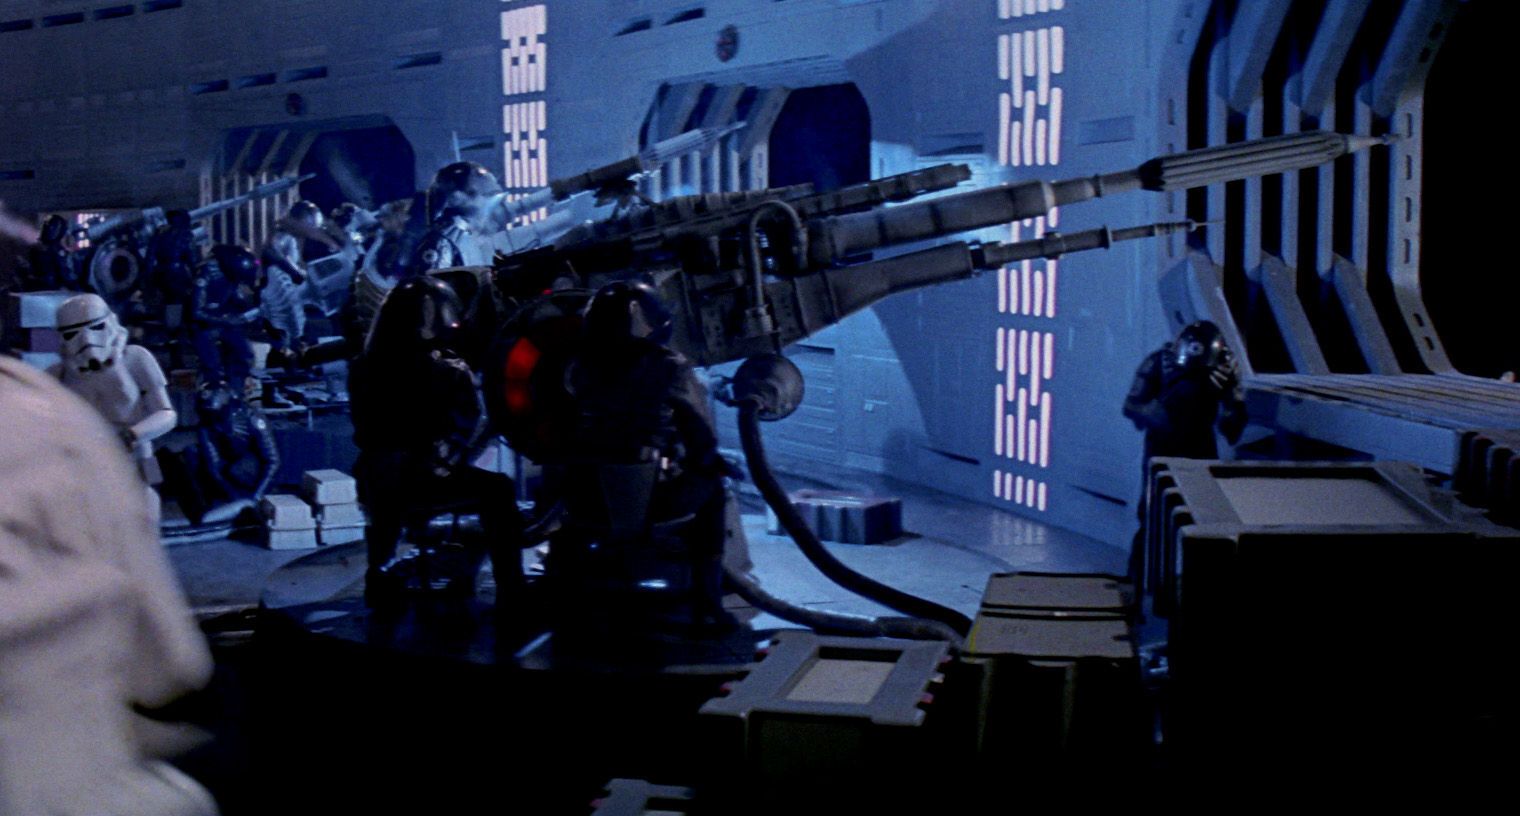 Star Wars Original Death Star Interior Gun Turrets